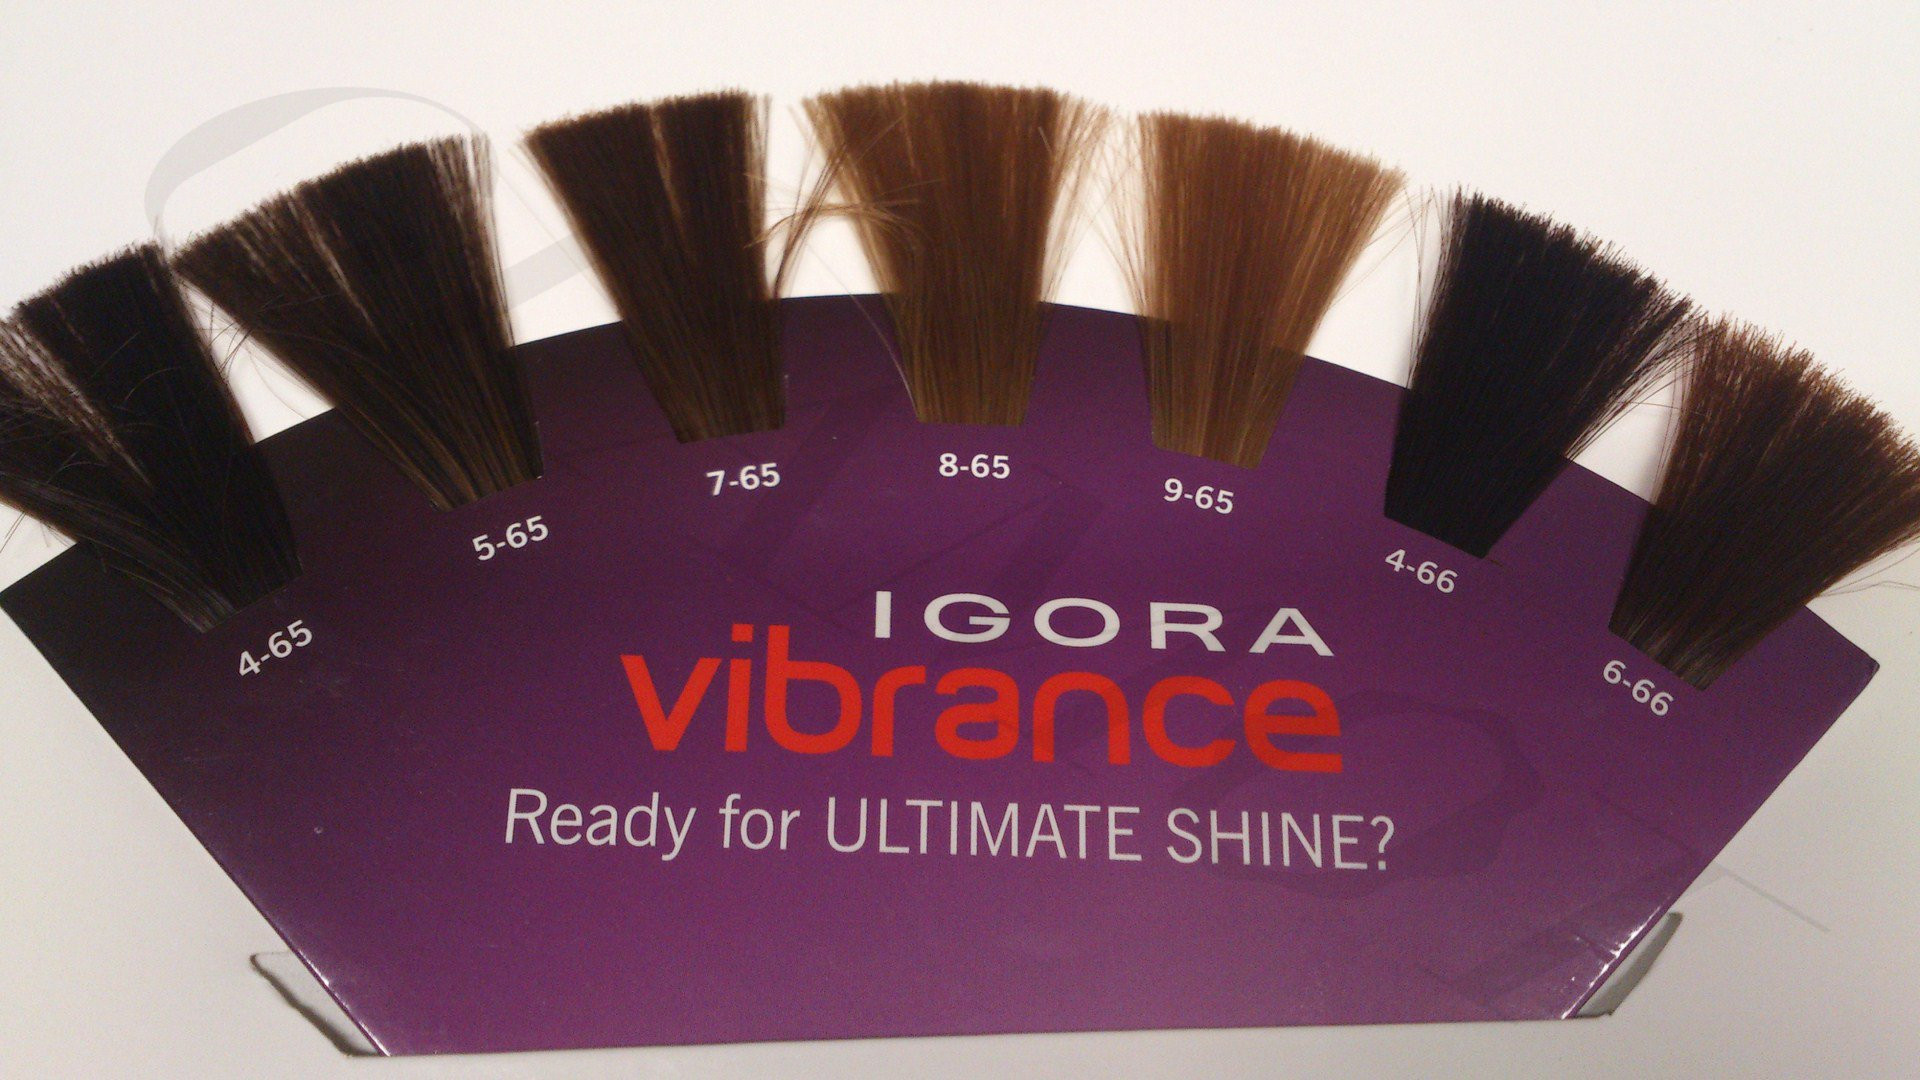 igora vibrance gloss and tone color chart igora vibrance gloss and tone ins...